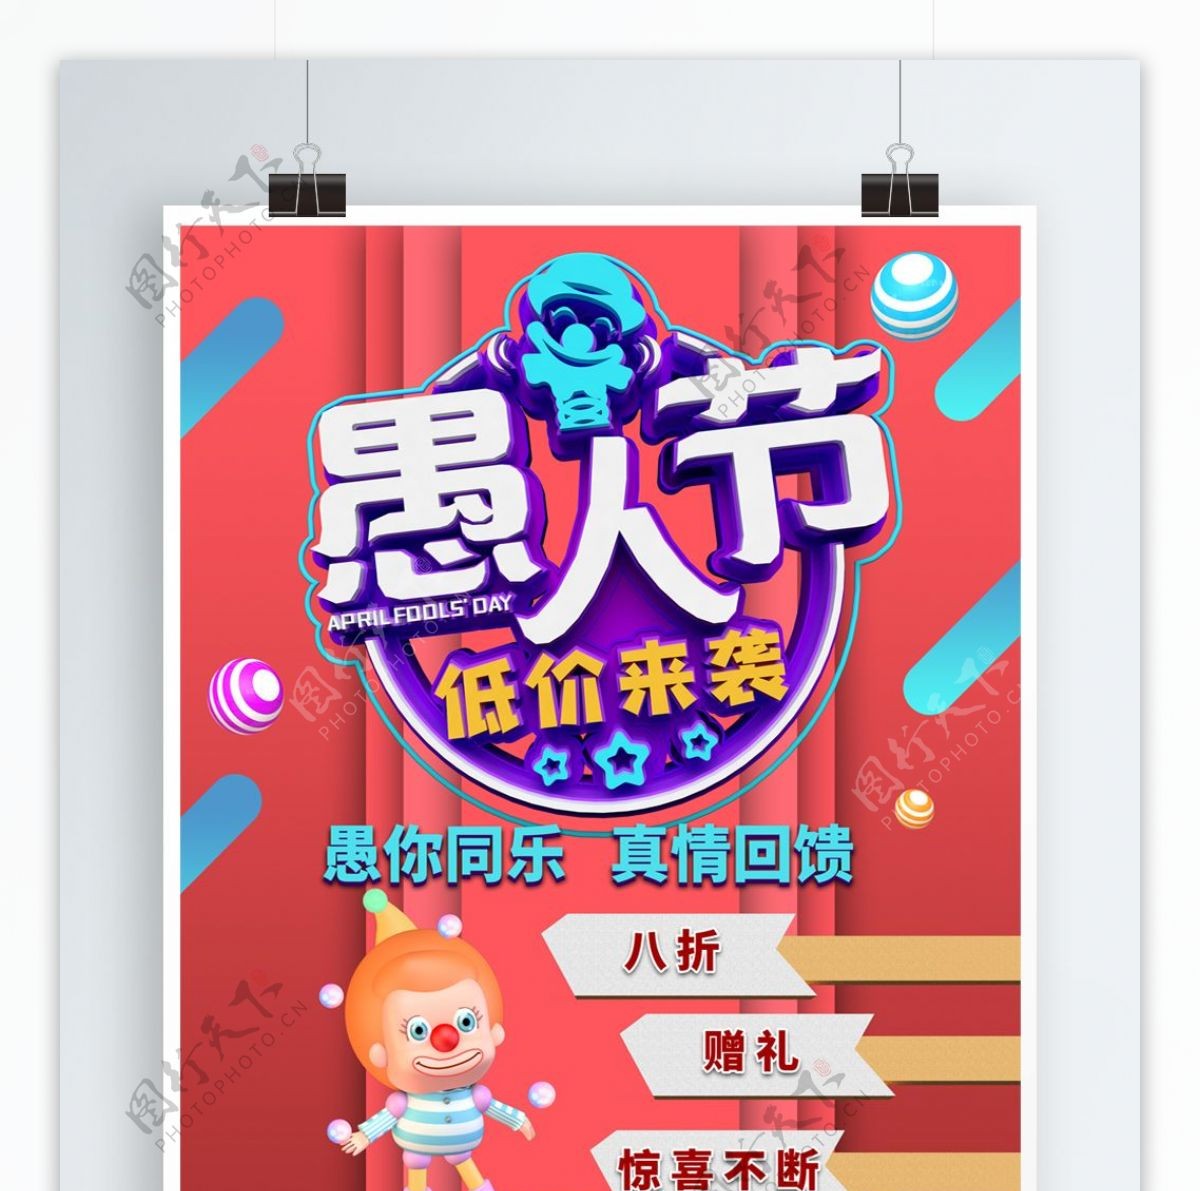 愚人节4.1节日海报